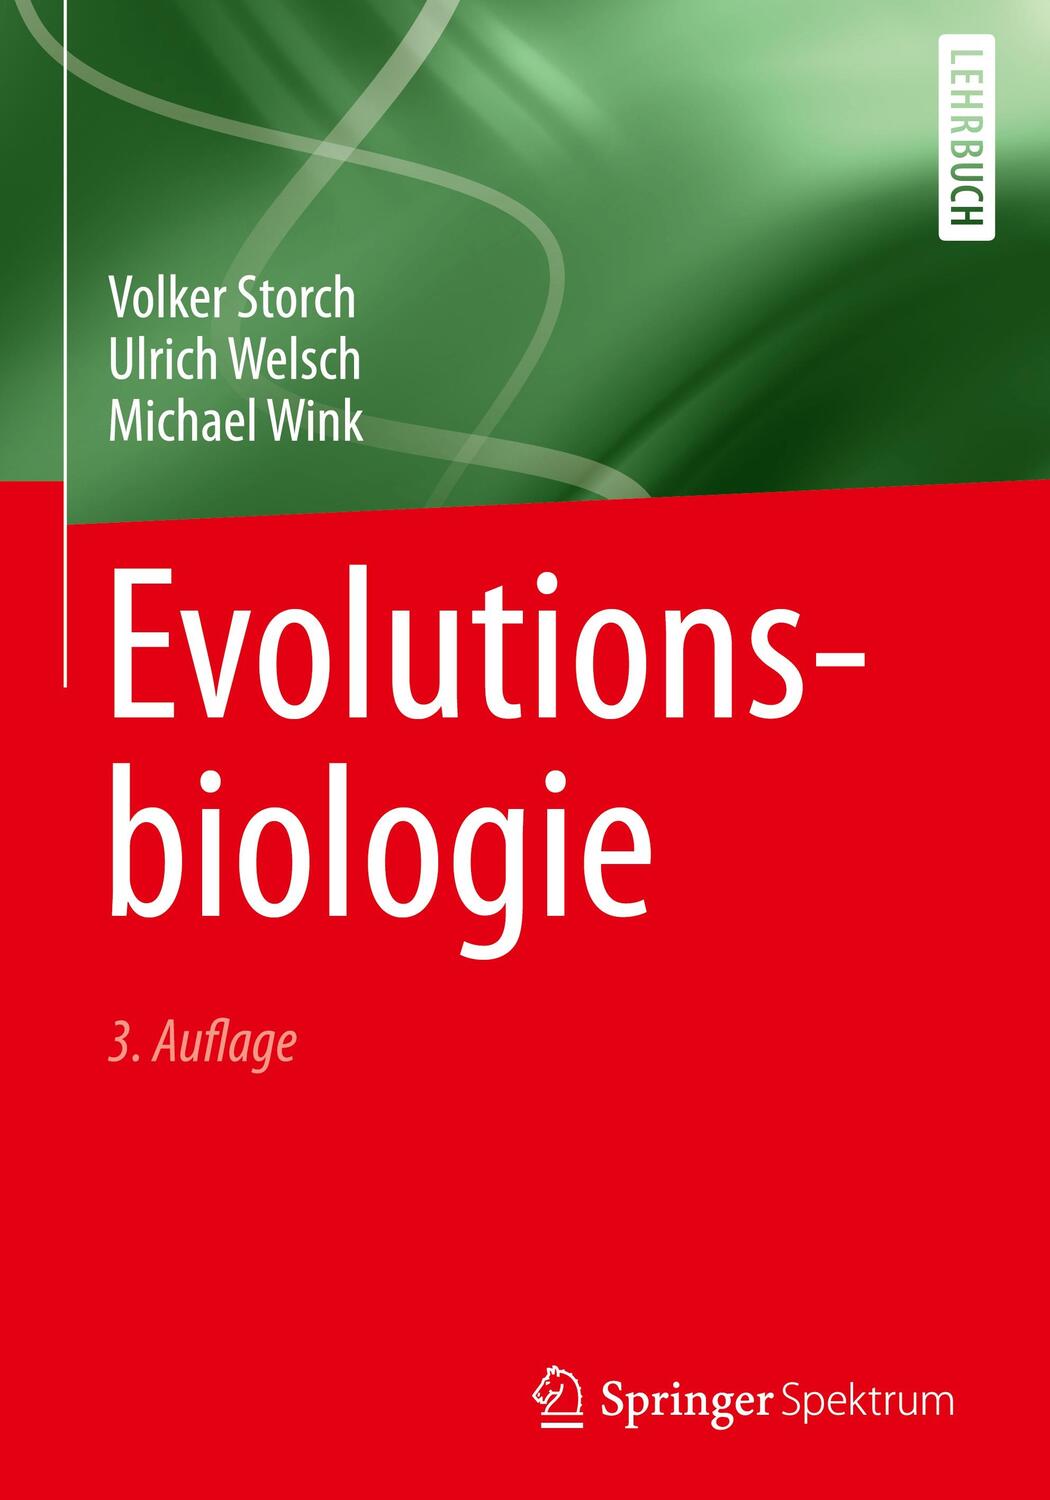 Evolutionsbiologie - Storch, Volker